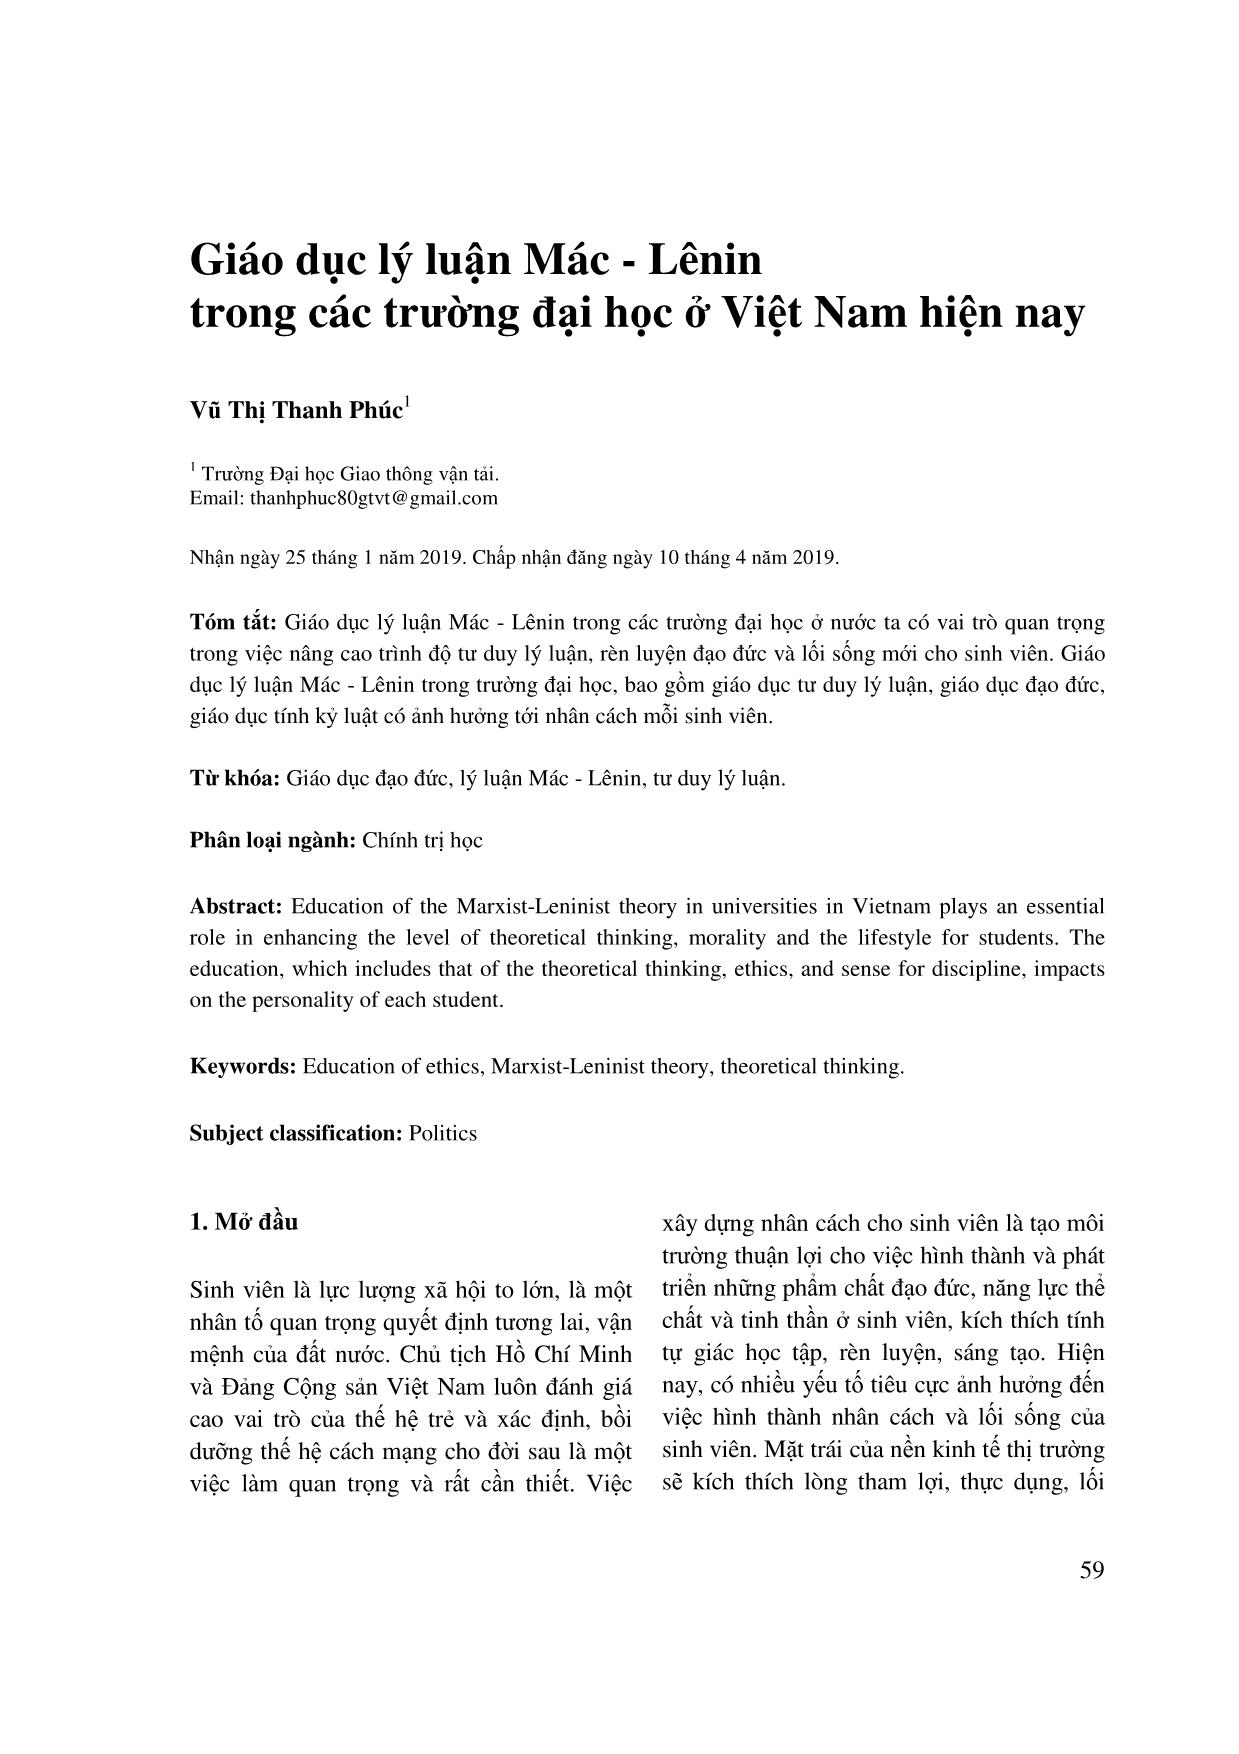 Giáo dục lý luận Mác - Lênin trong các trường đại học ở Việt Nam hiện nay trang 1